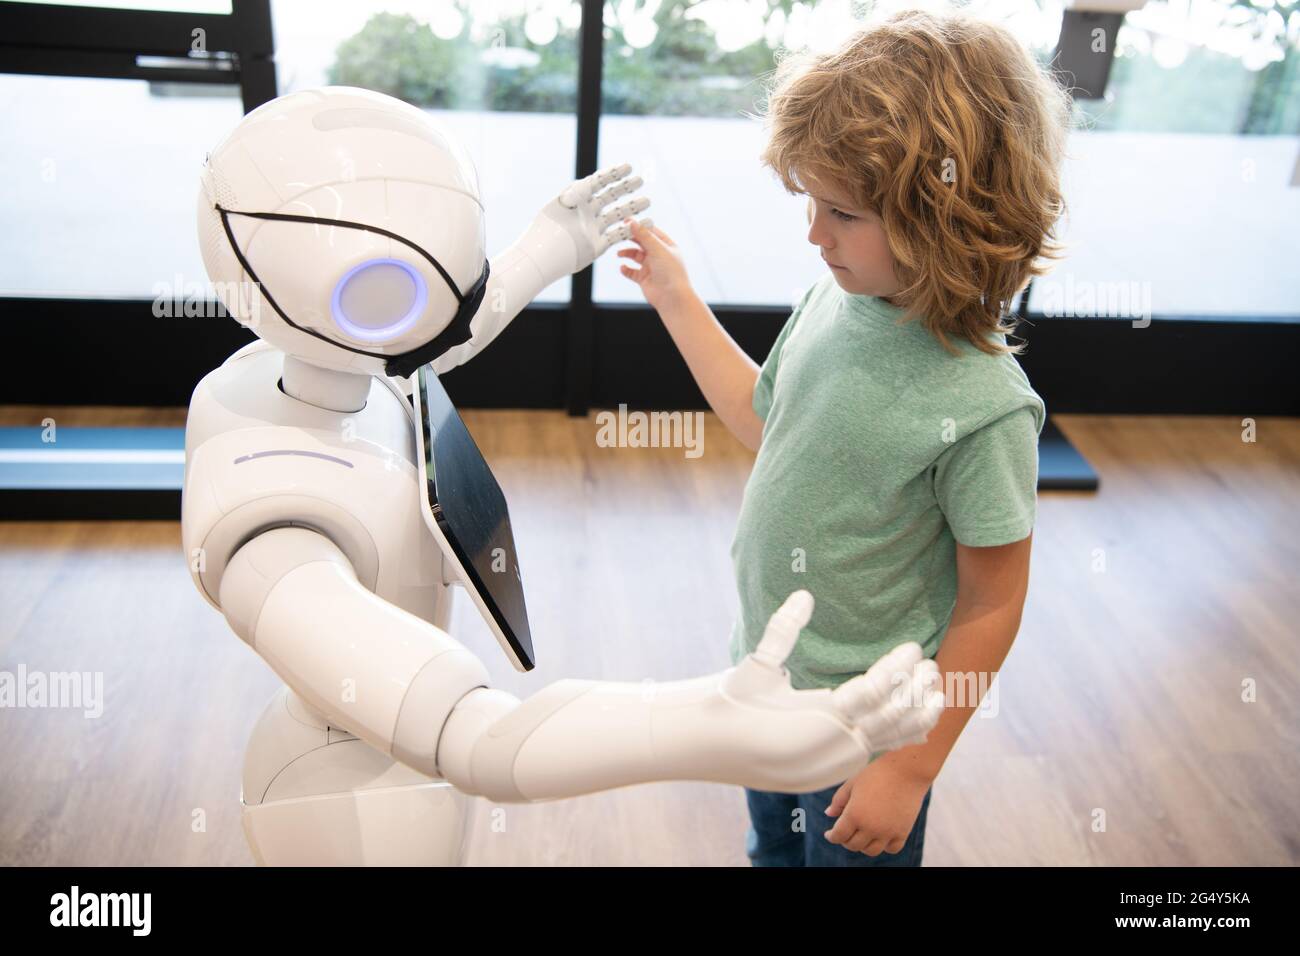 Roboter Pandemie Zukunft. Roboter kommunizieren mit Kind. Automatisierung. Humanoide Technologie Stockfoto